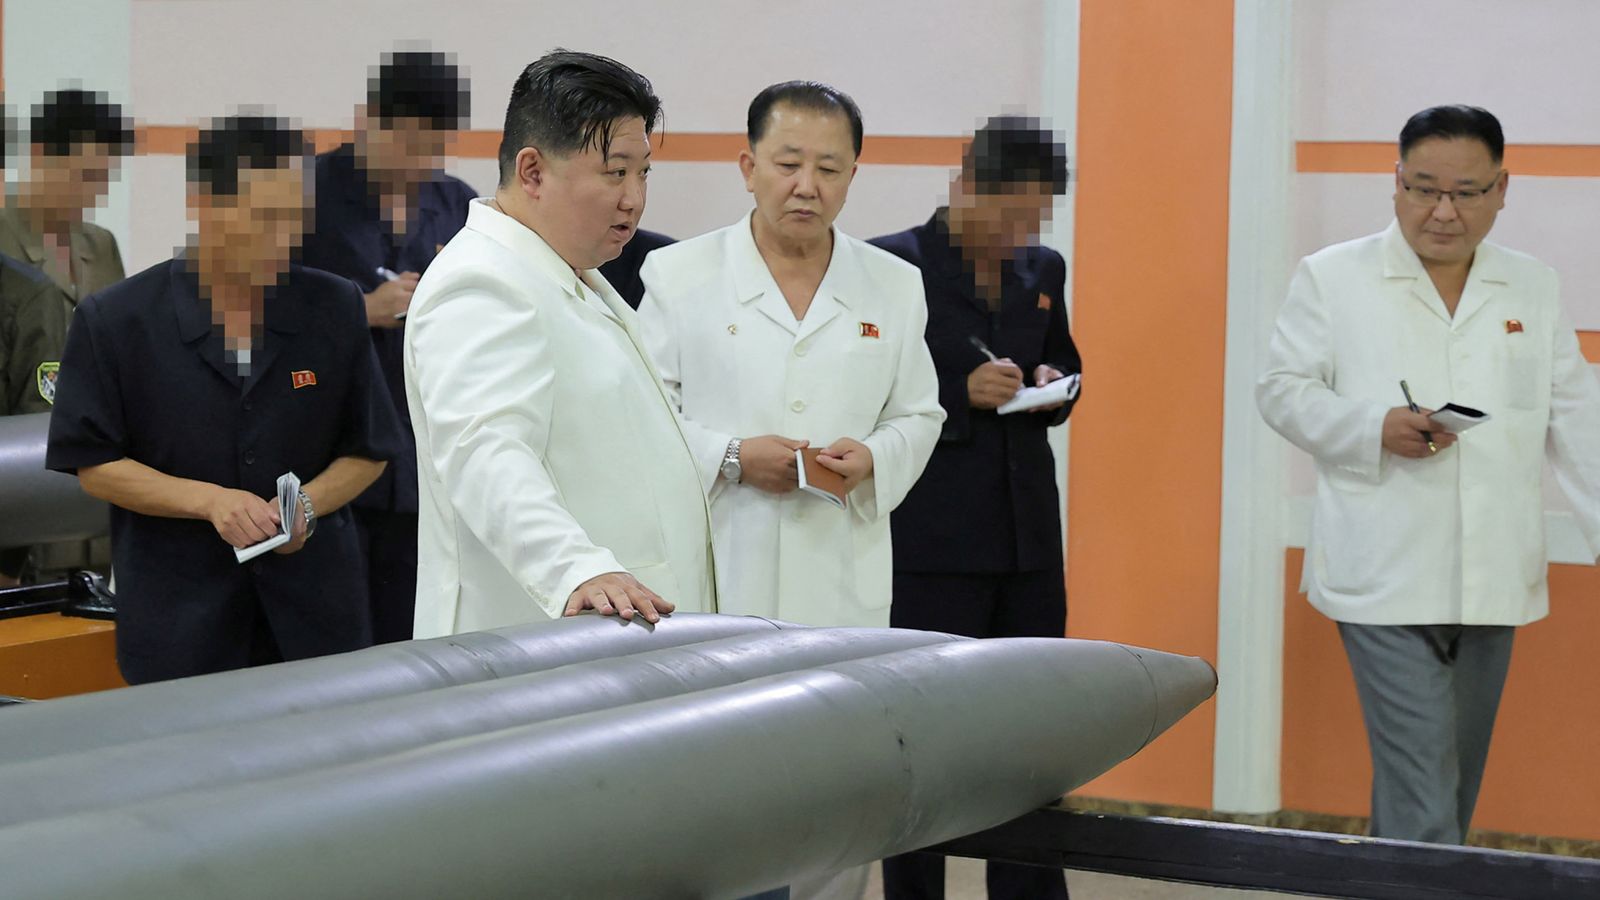 Северна Корея: Ким Чен Ун иска власт, за да „сигурно унищожи“ враговете си, докато нарежда рязко увеличаване на производството на ракети